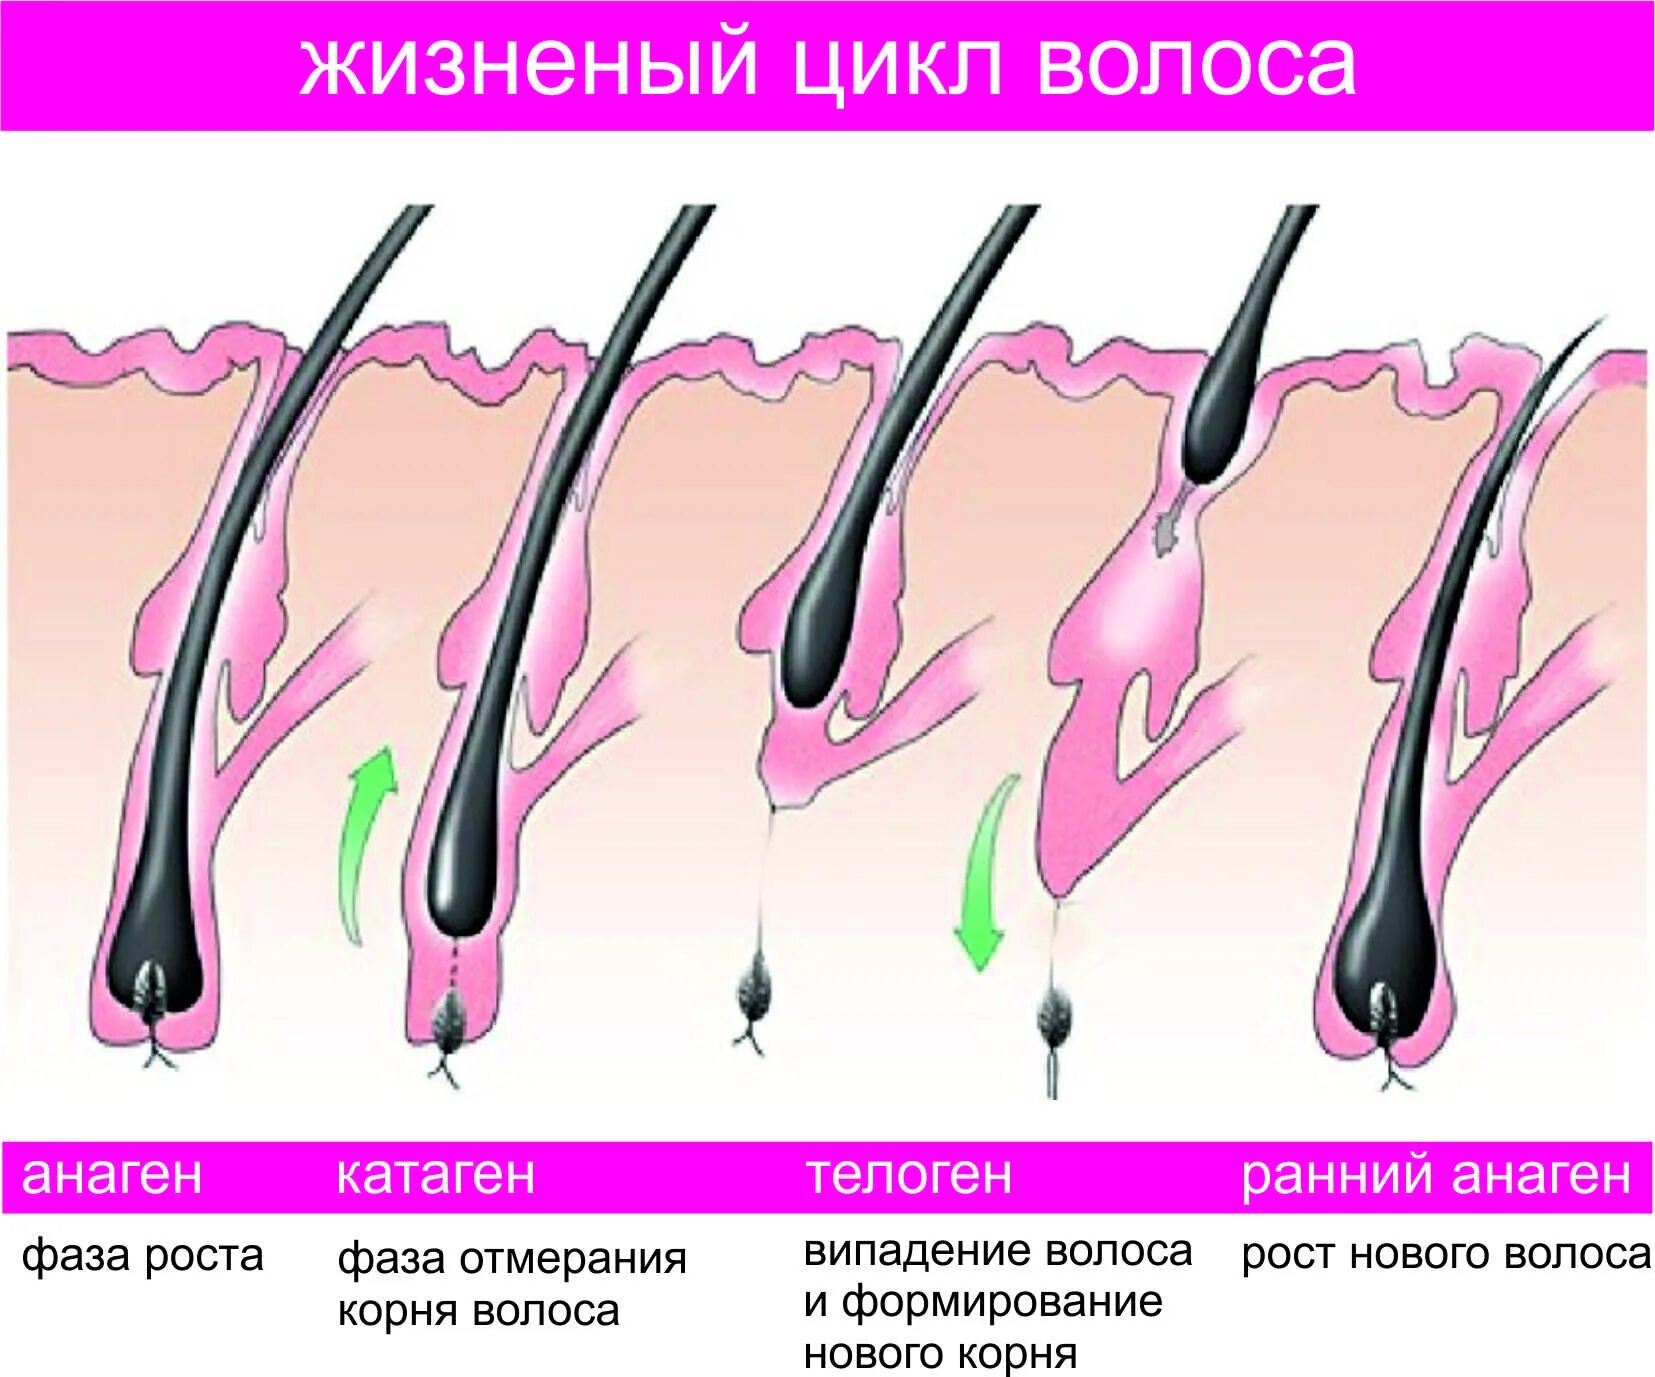 Корень волоса погружен в окруженную. Анаген телоген. Фаза роста анаген. Анаген катаген телоген. Стадии роста волос анаген.